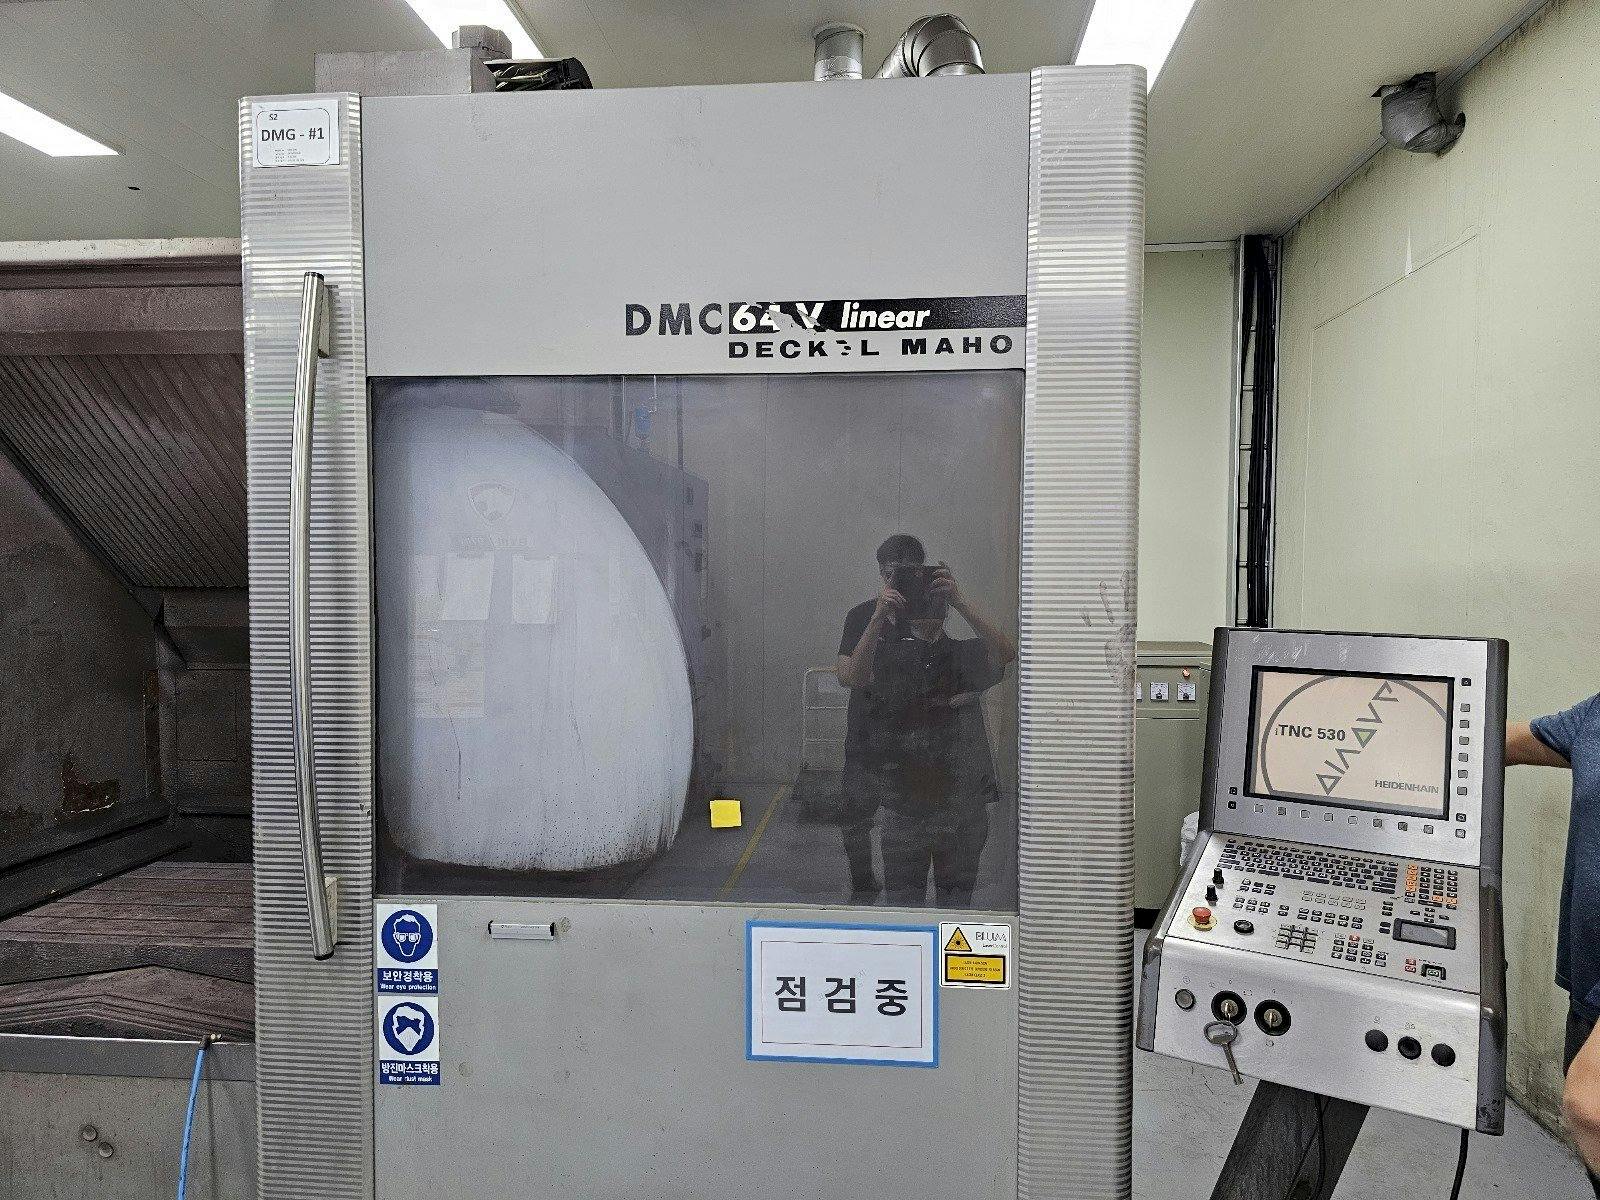 Vooraanzicht  van DECKEL MAHO DMC 64V linear  machine